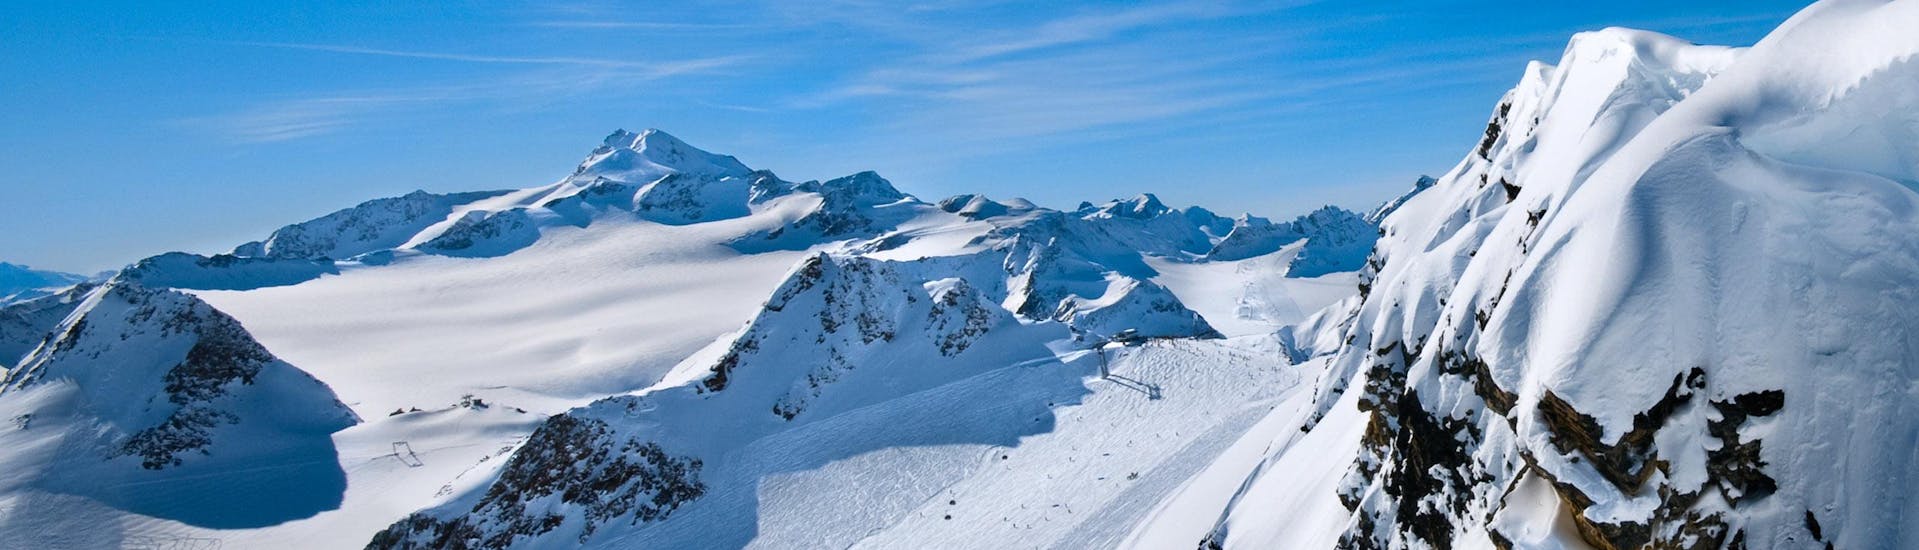 Tijdens een skiles met een skischool in Hoch-Imst heb je een prachtig uitzicht op zonnige bergen.